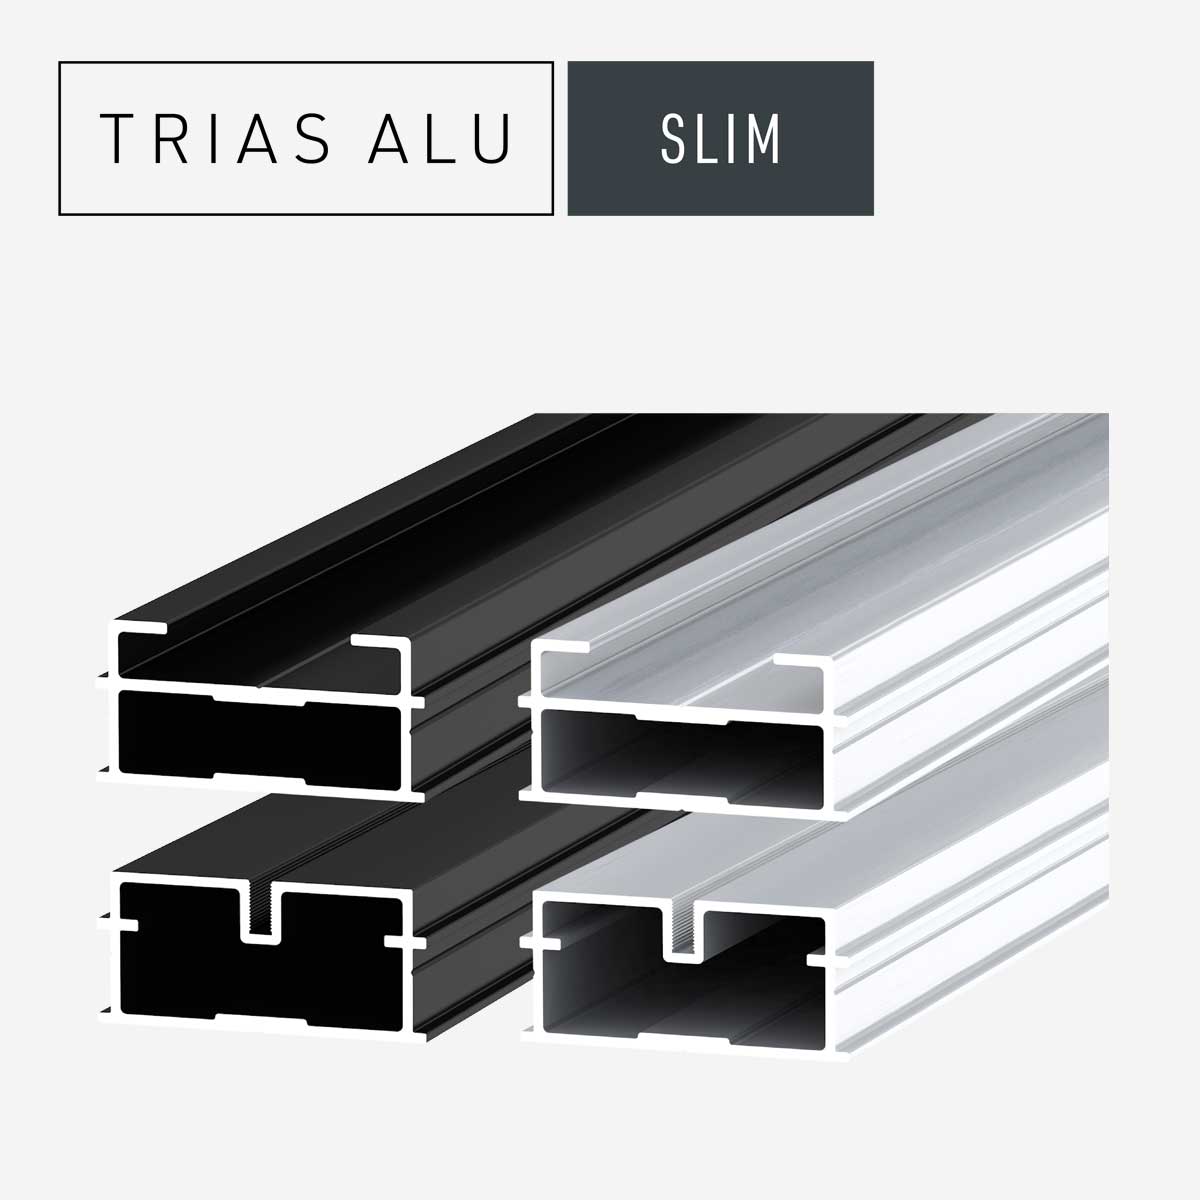 Das Bild zeigt die Terrassenprofile Slim des Systems TRIAS ALU